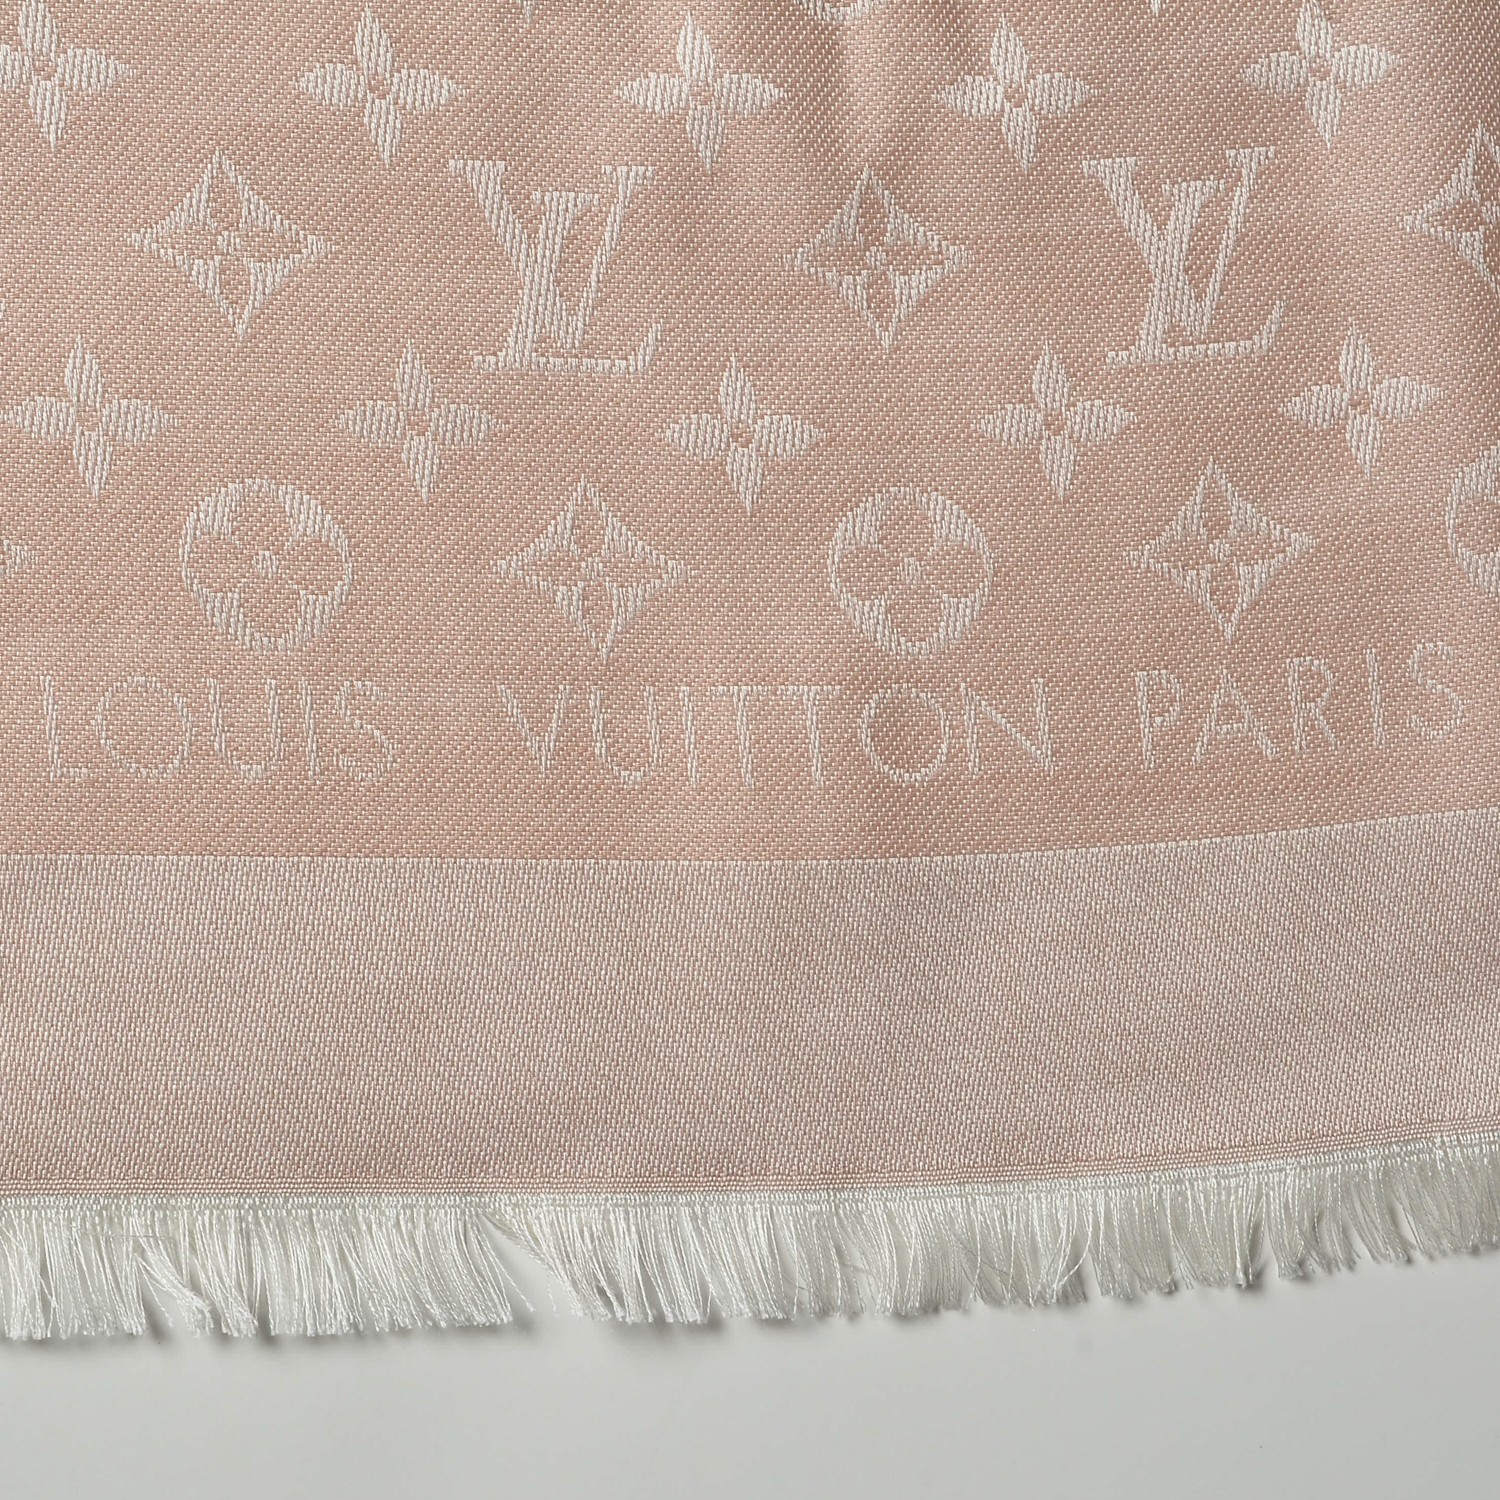 Louis Vuitton Monogram Denim Shawl Pink